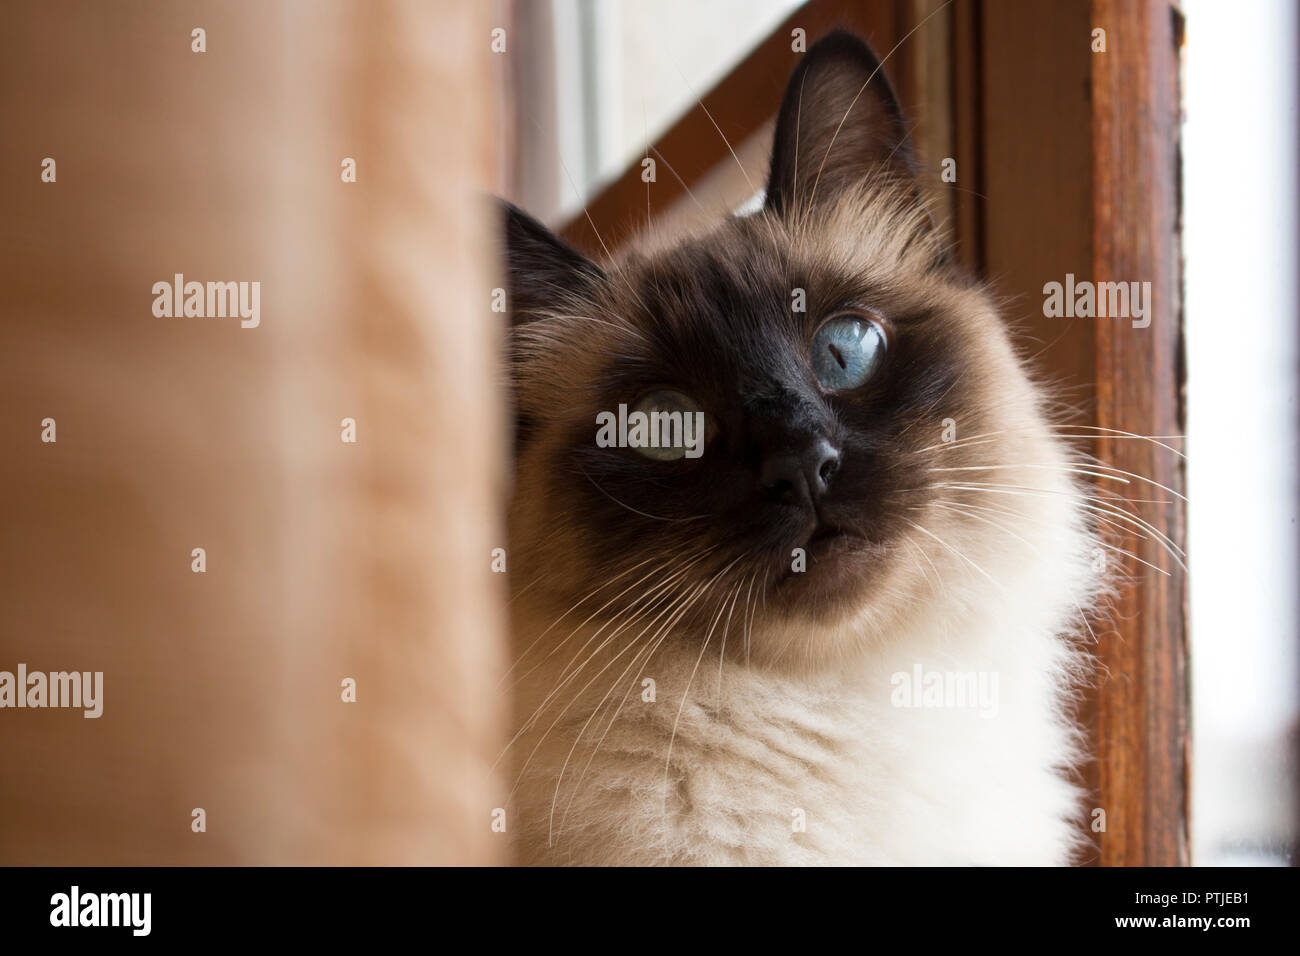 Close up adorabile gatto siamese gatto con bellissimi occhi blu guardando dritto, accanto ad un rustico finestra in legno. Foto Stock